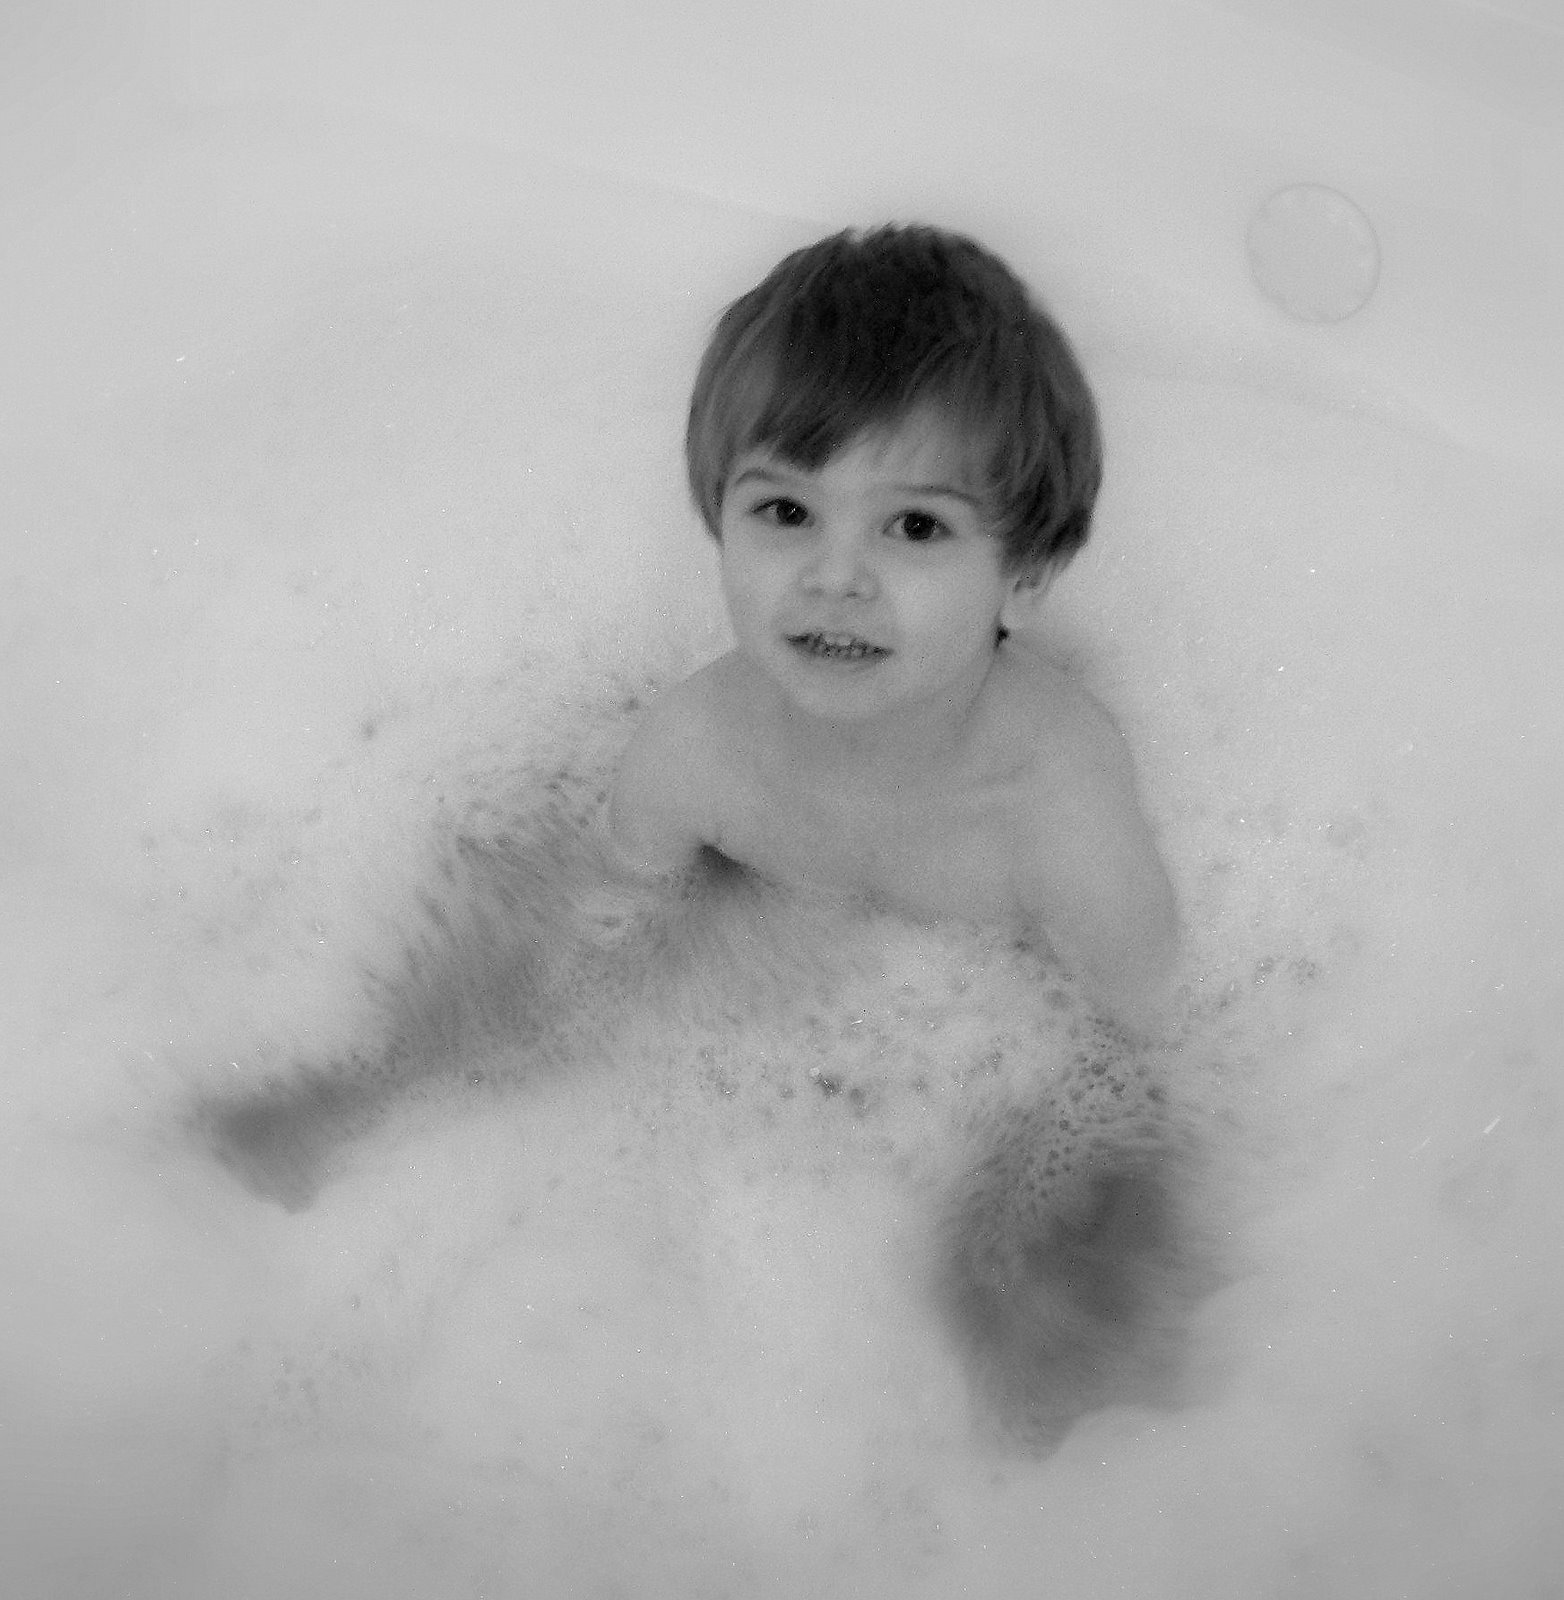 [Carter+in+Bathtub+at+Resort.jpg]